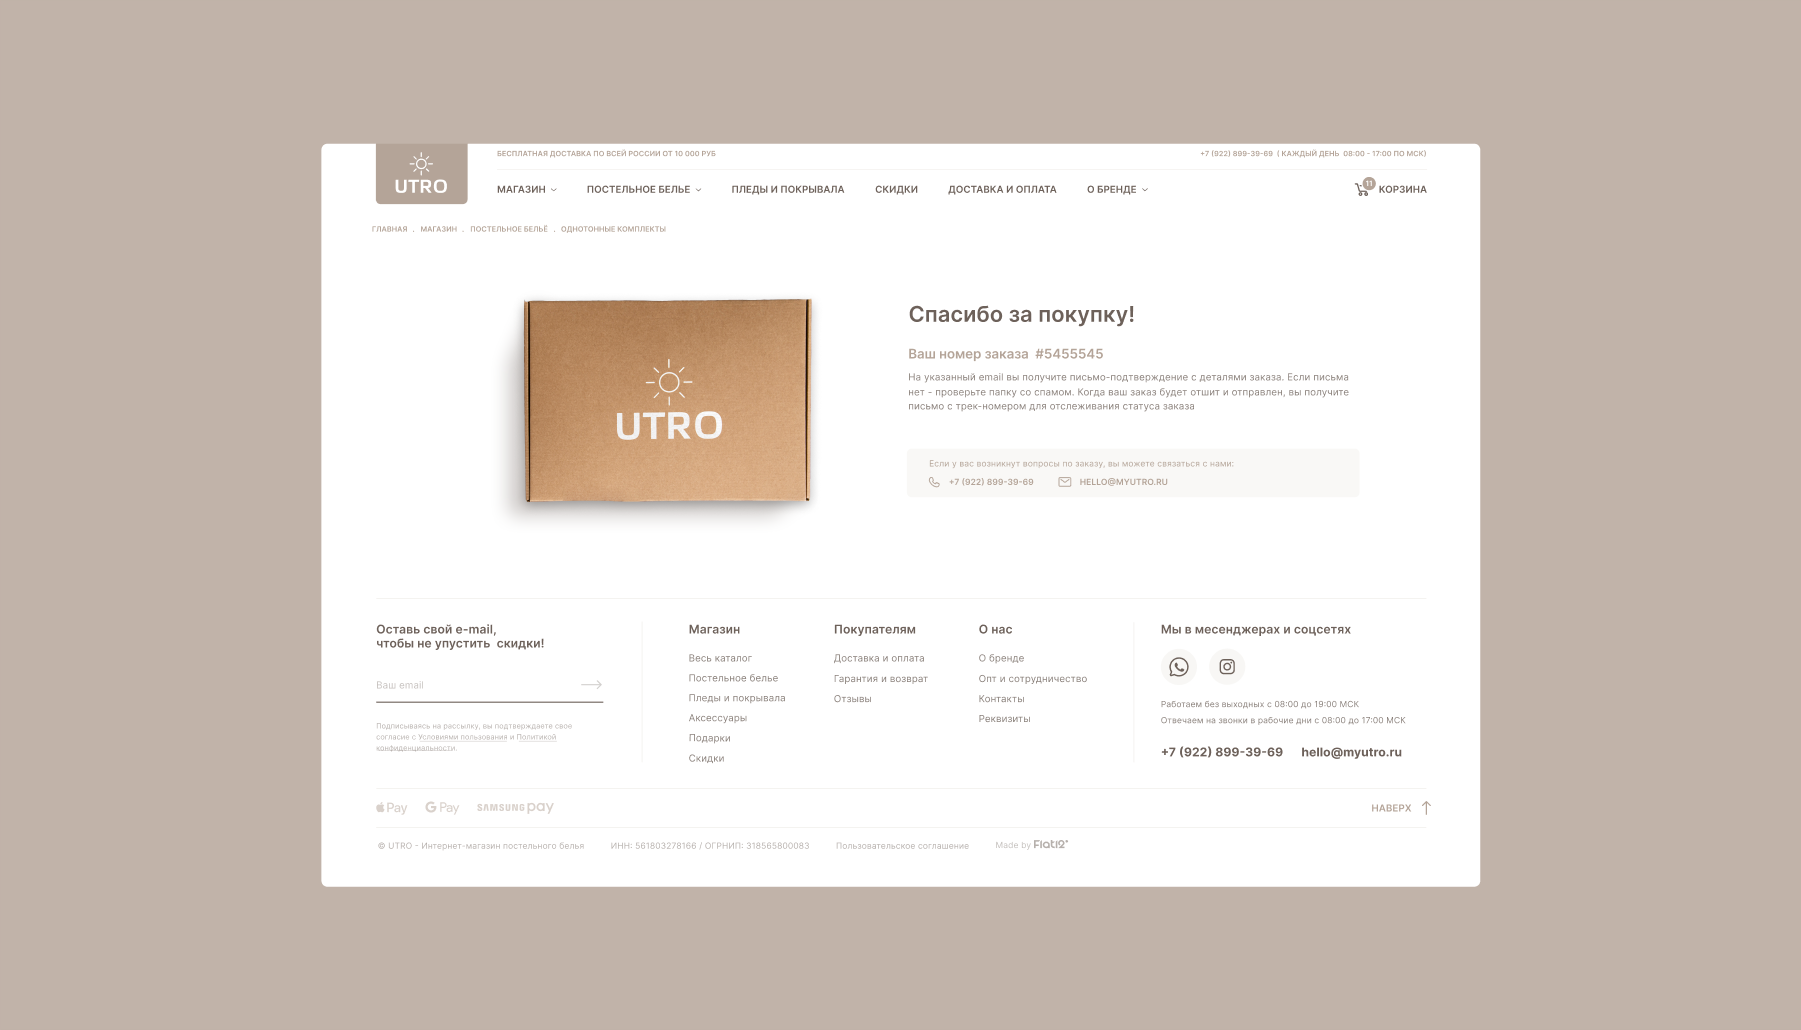 Интернет-магазин UTRO — Изображение №8 — Интерфейсы, Анимация на Dprofile